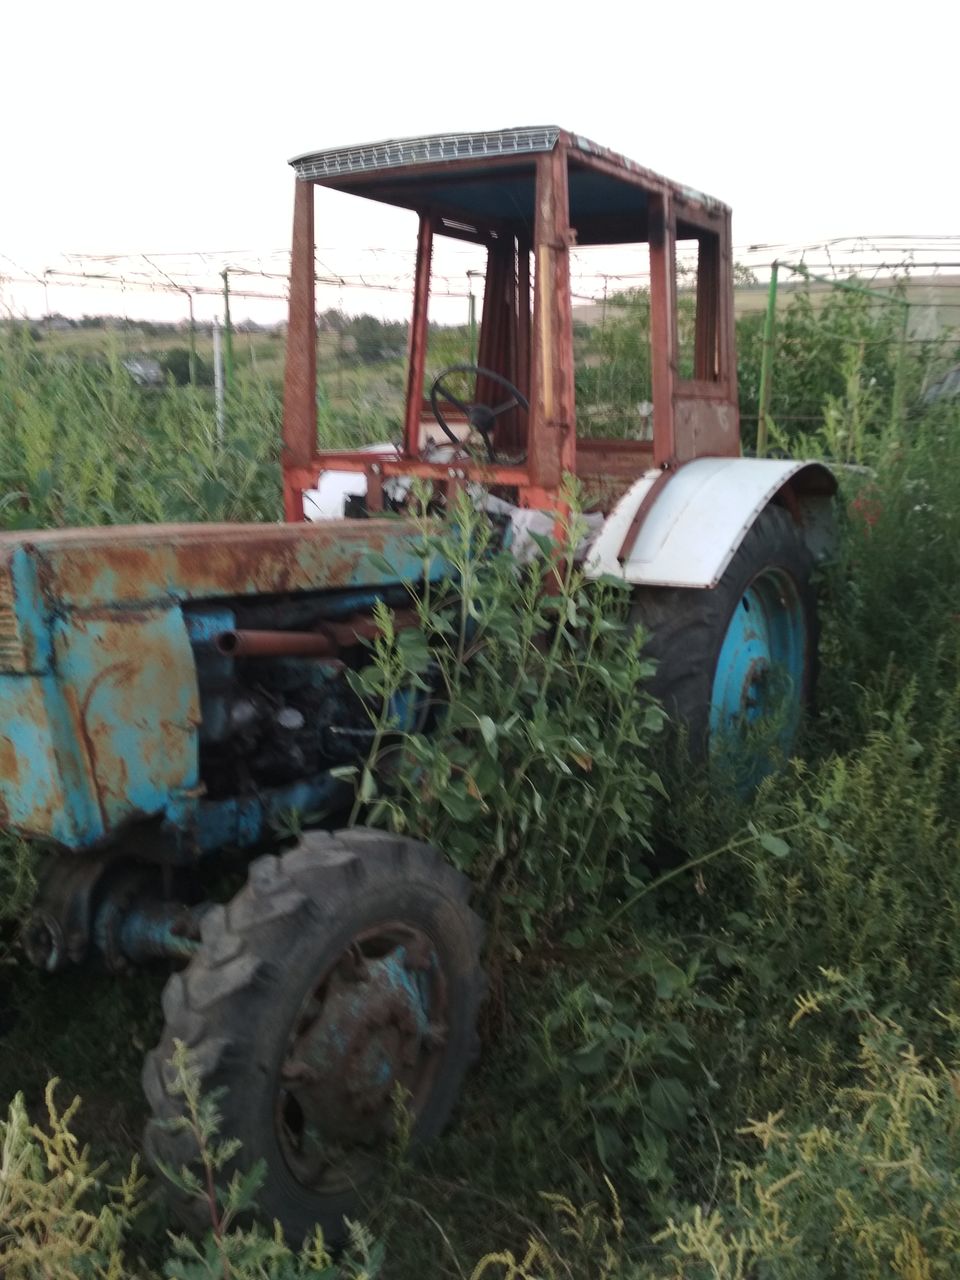 Купить трактор в курганской области бу